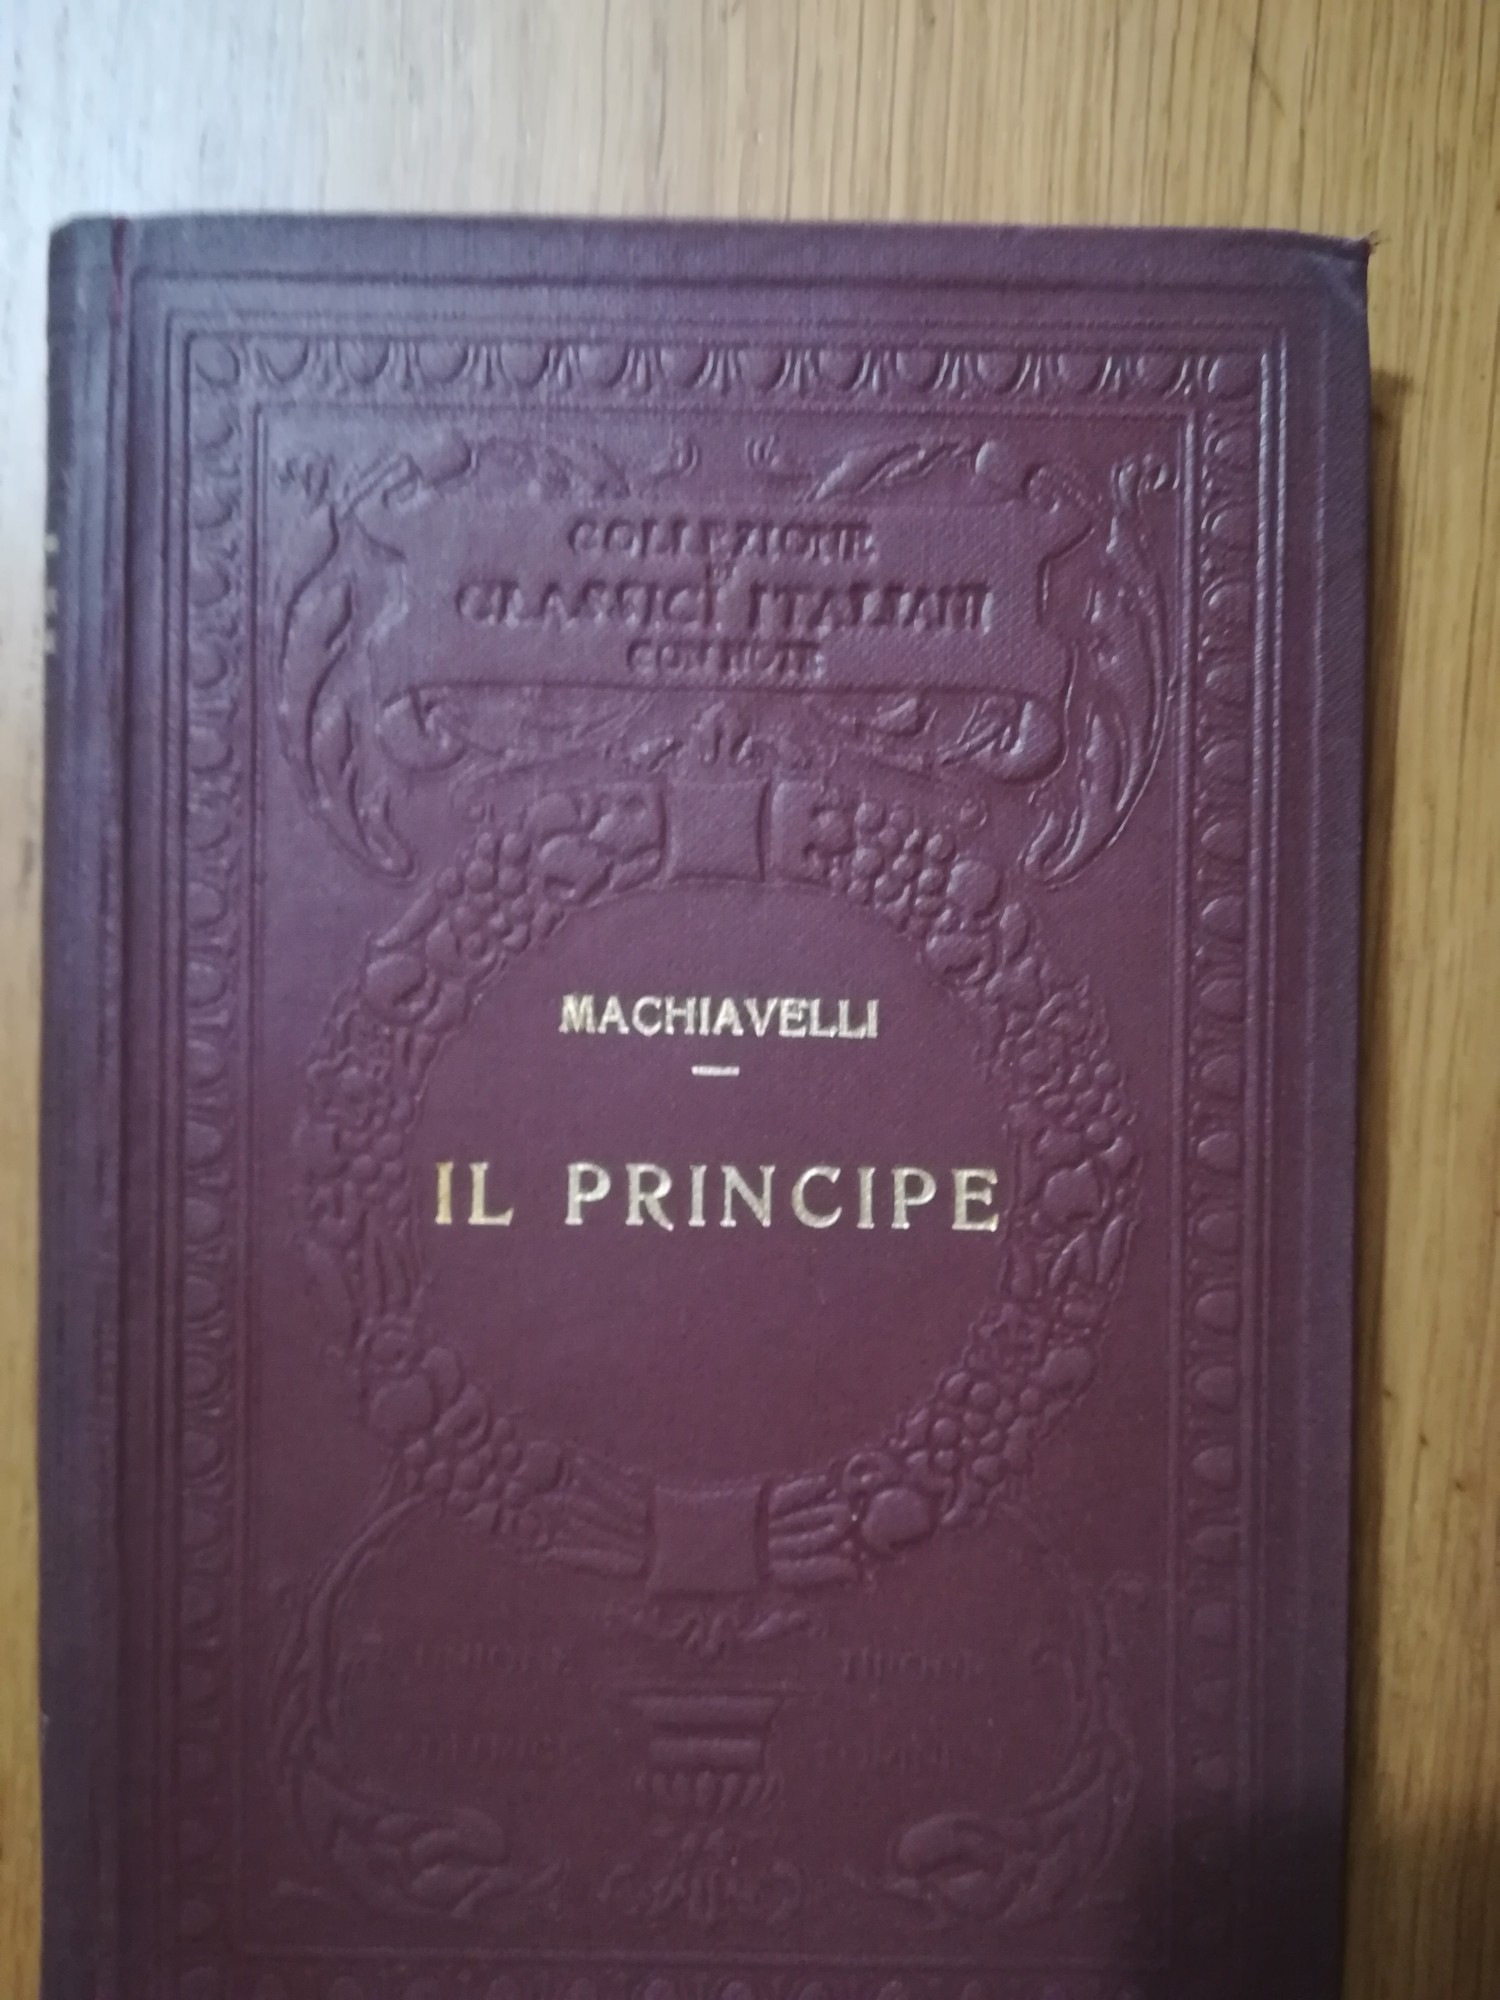 Il principe - Machiavelli